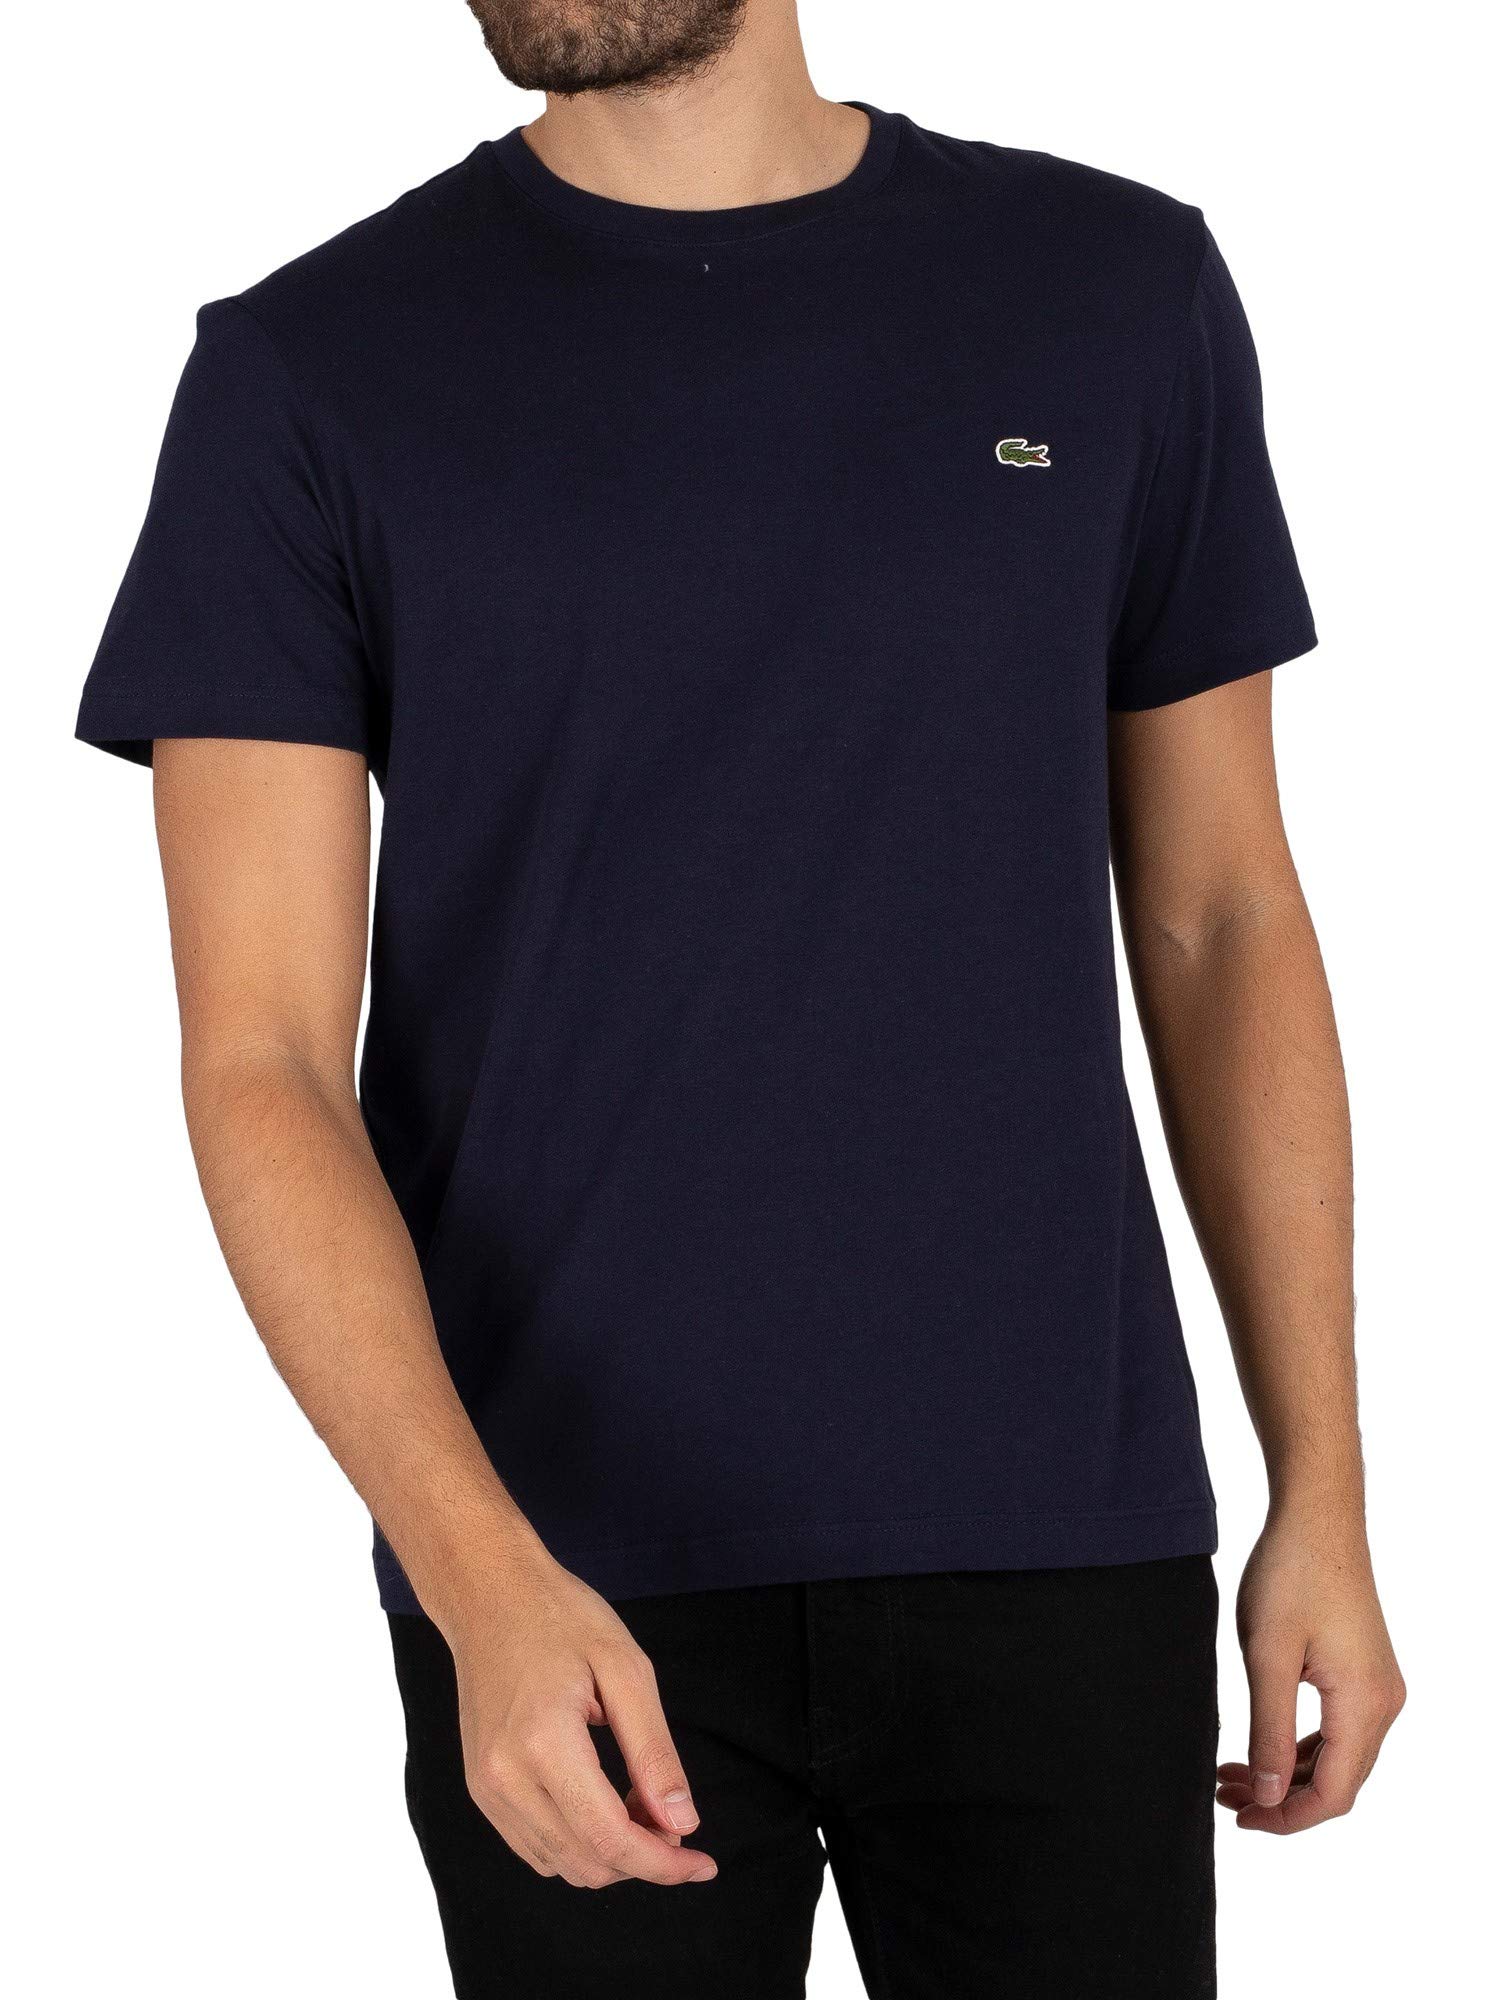 Lacoste Herren T-Shirt TH2038-00 Einfarbig, Blau (NAVY BLUE 166), Gr. 3 (Herstellergröße: S)